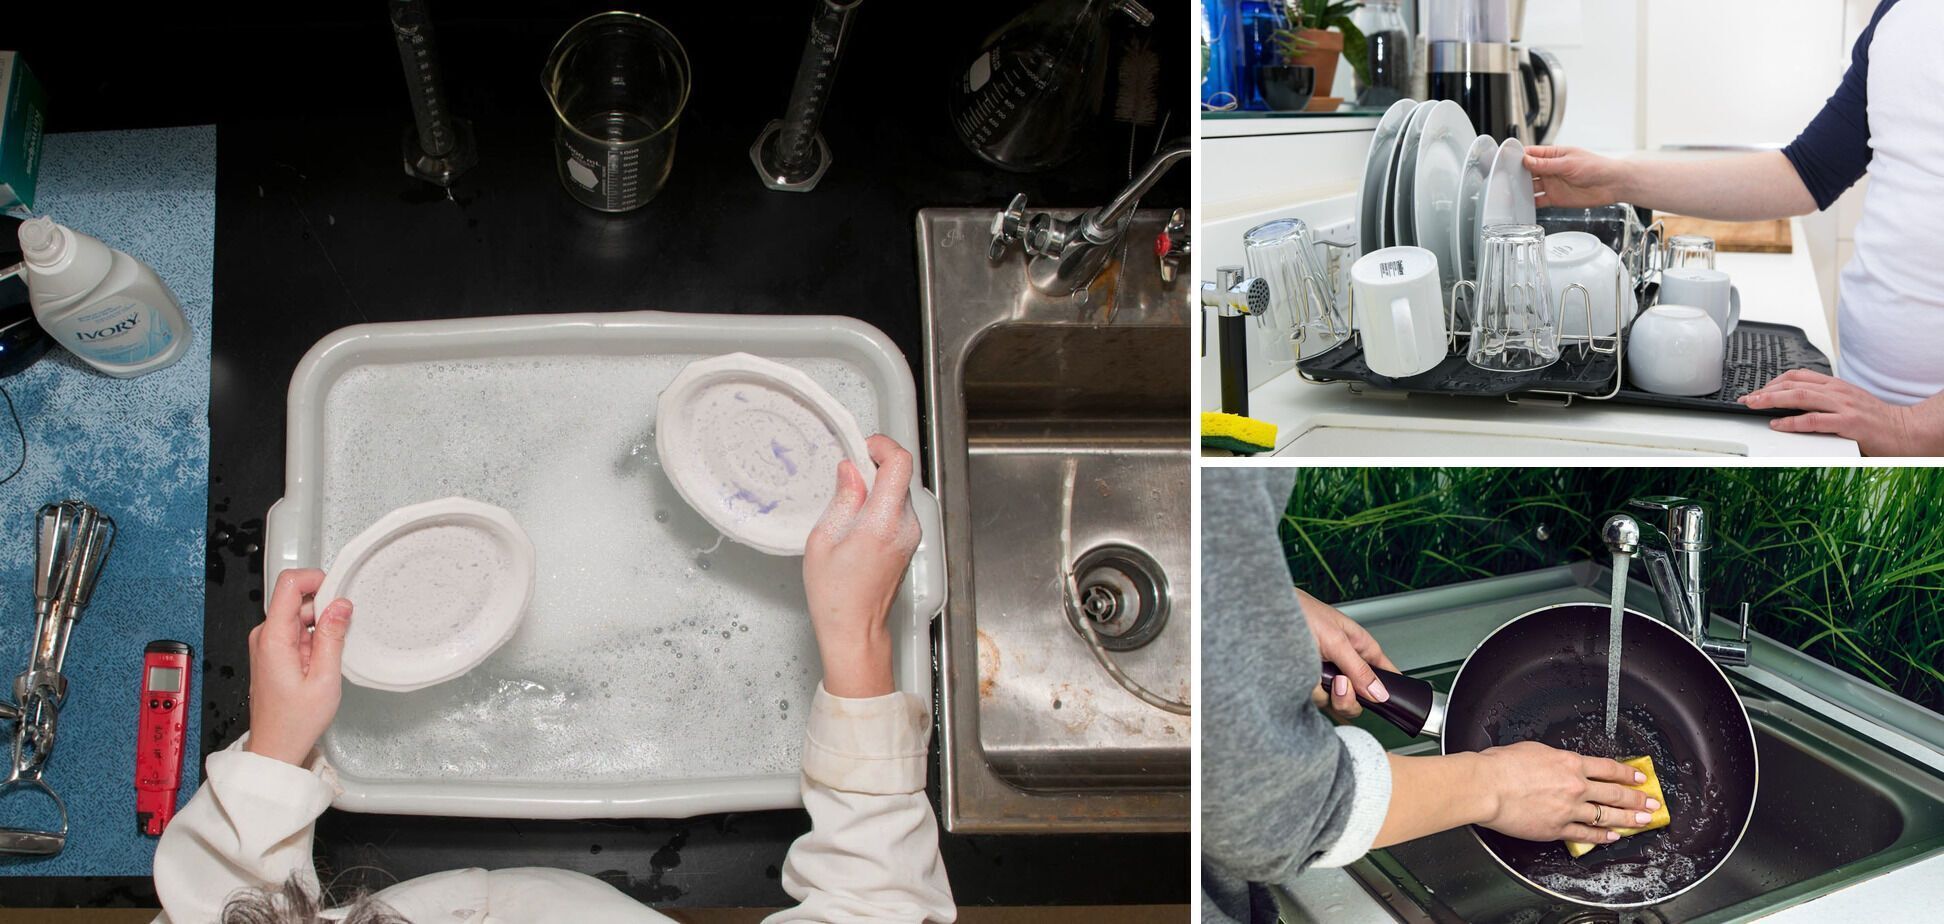 Як відмити посуд без миючого